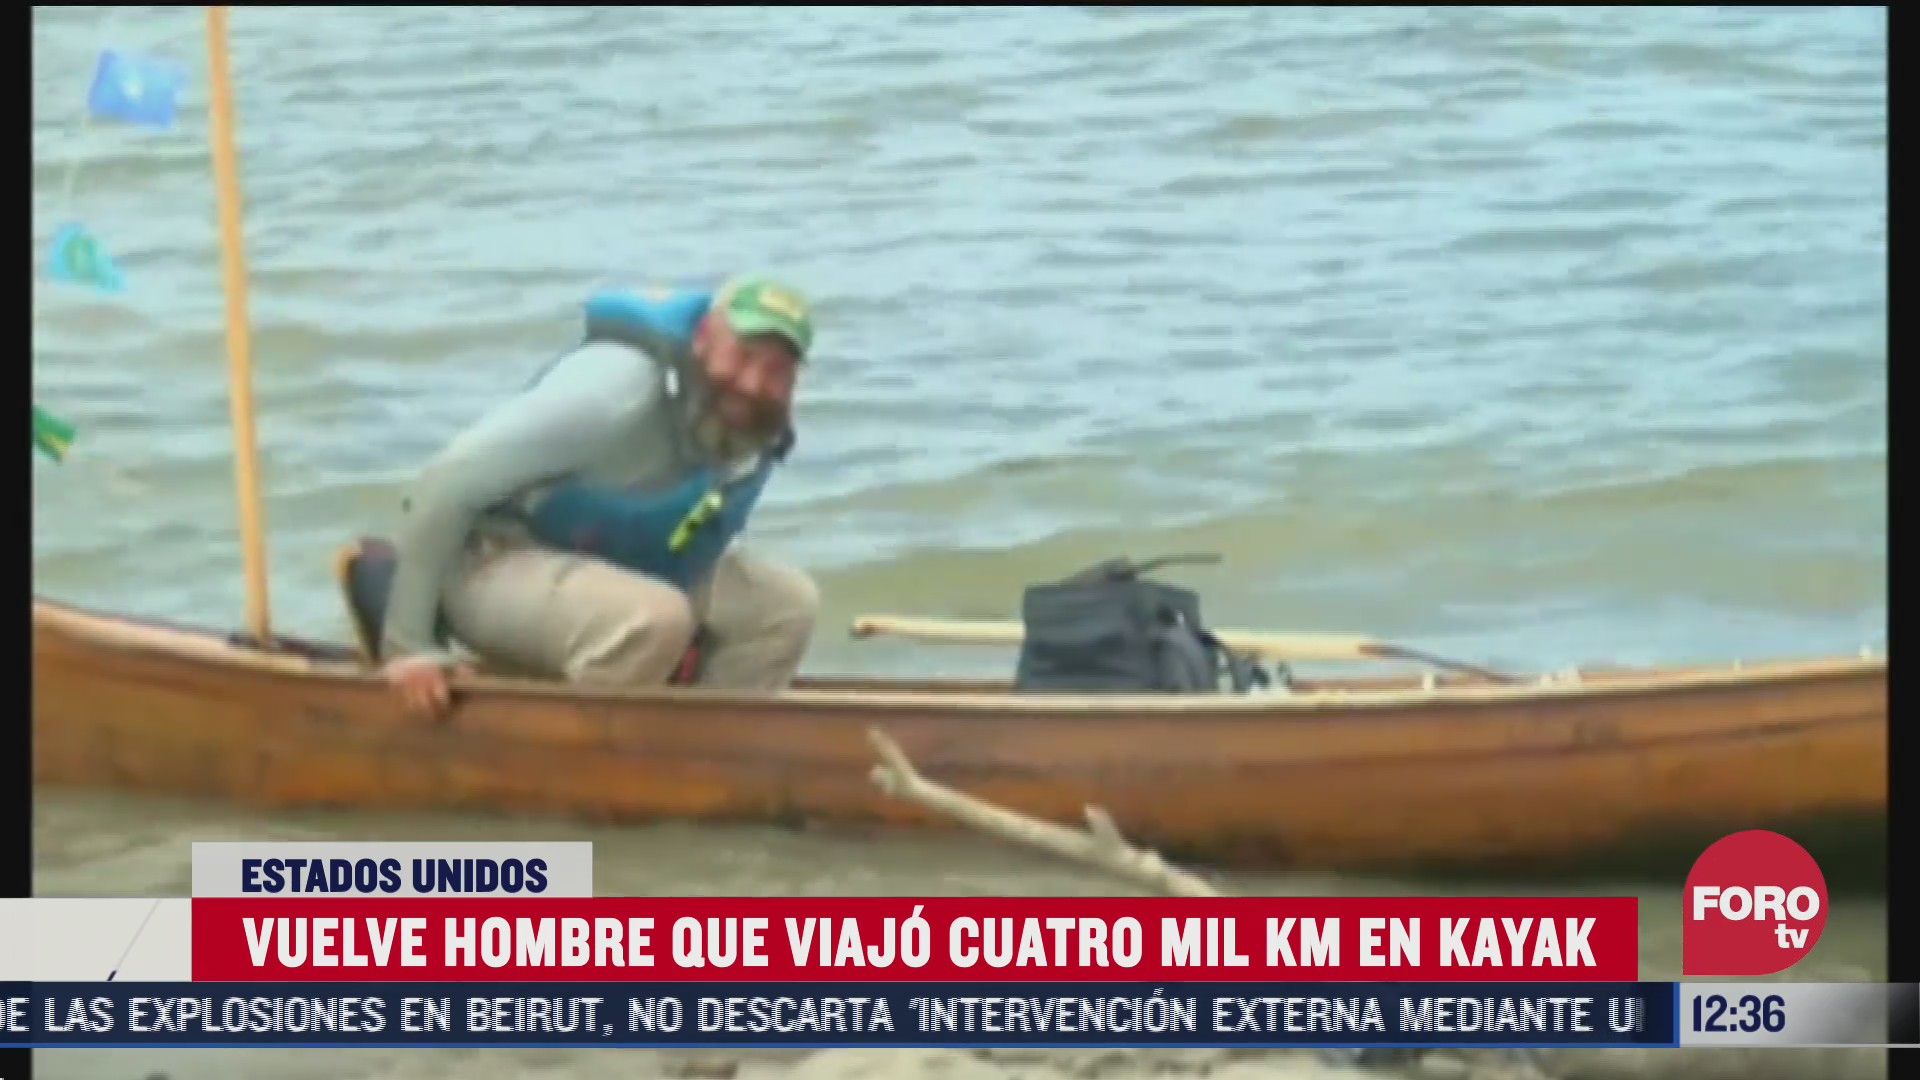 regresa a casa tras viajar miles de kilometros en kayak en eeuu